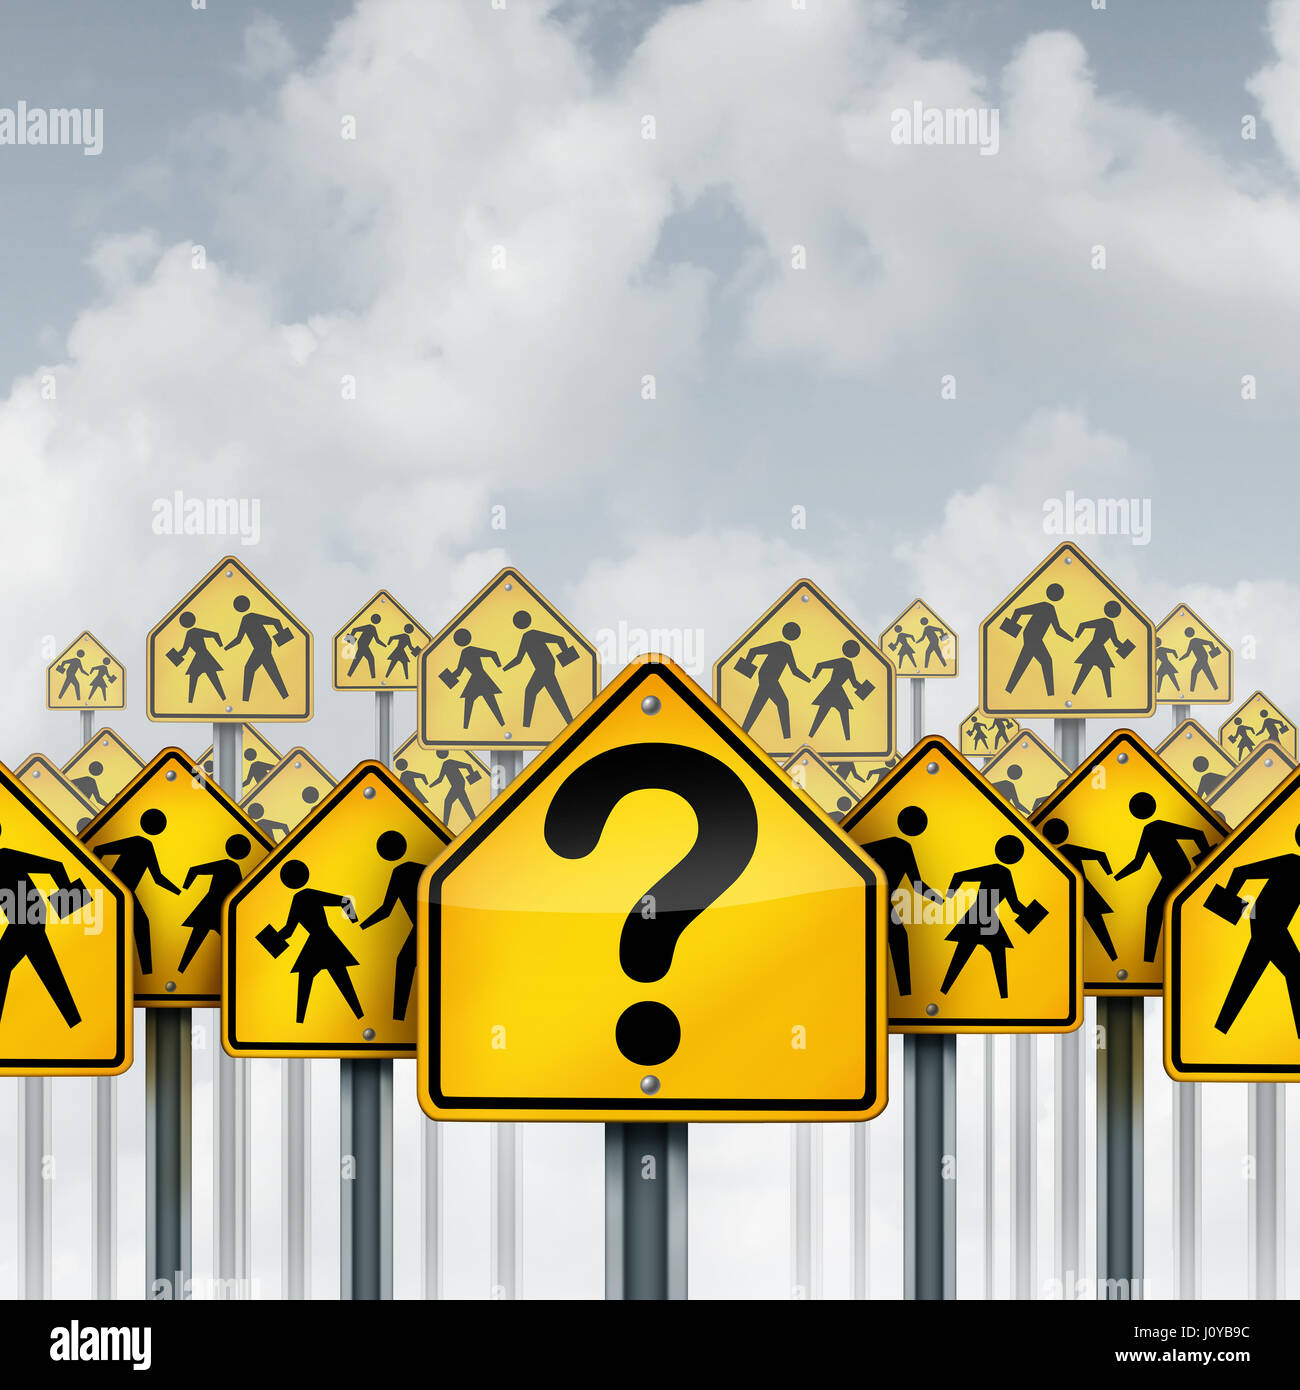 Schüler Fragen-Konzept als eine Gruppe von Verkehrszeichen mit Schule Kreuzung Ikonen und ein Fragezeichen als Bildung Krise Metapher. Stockfoto